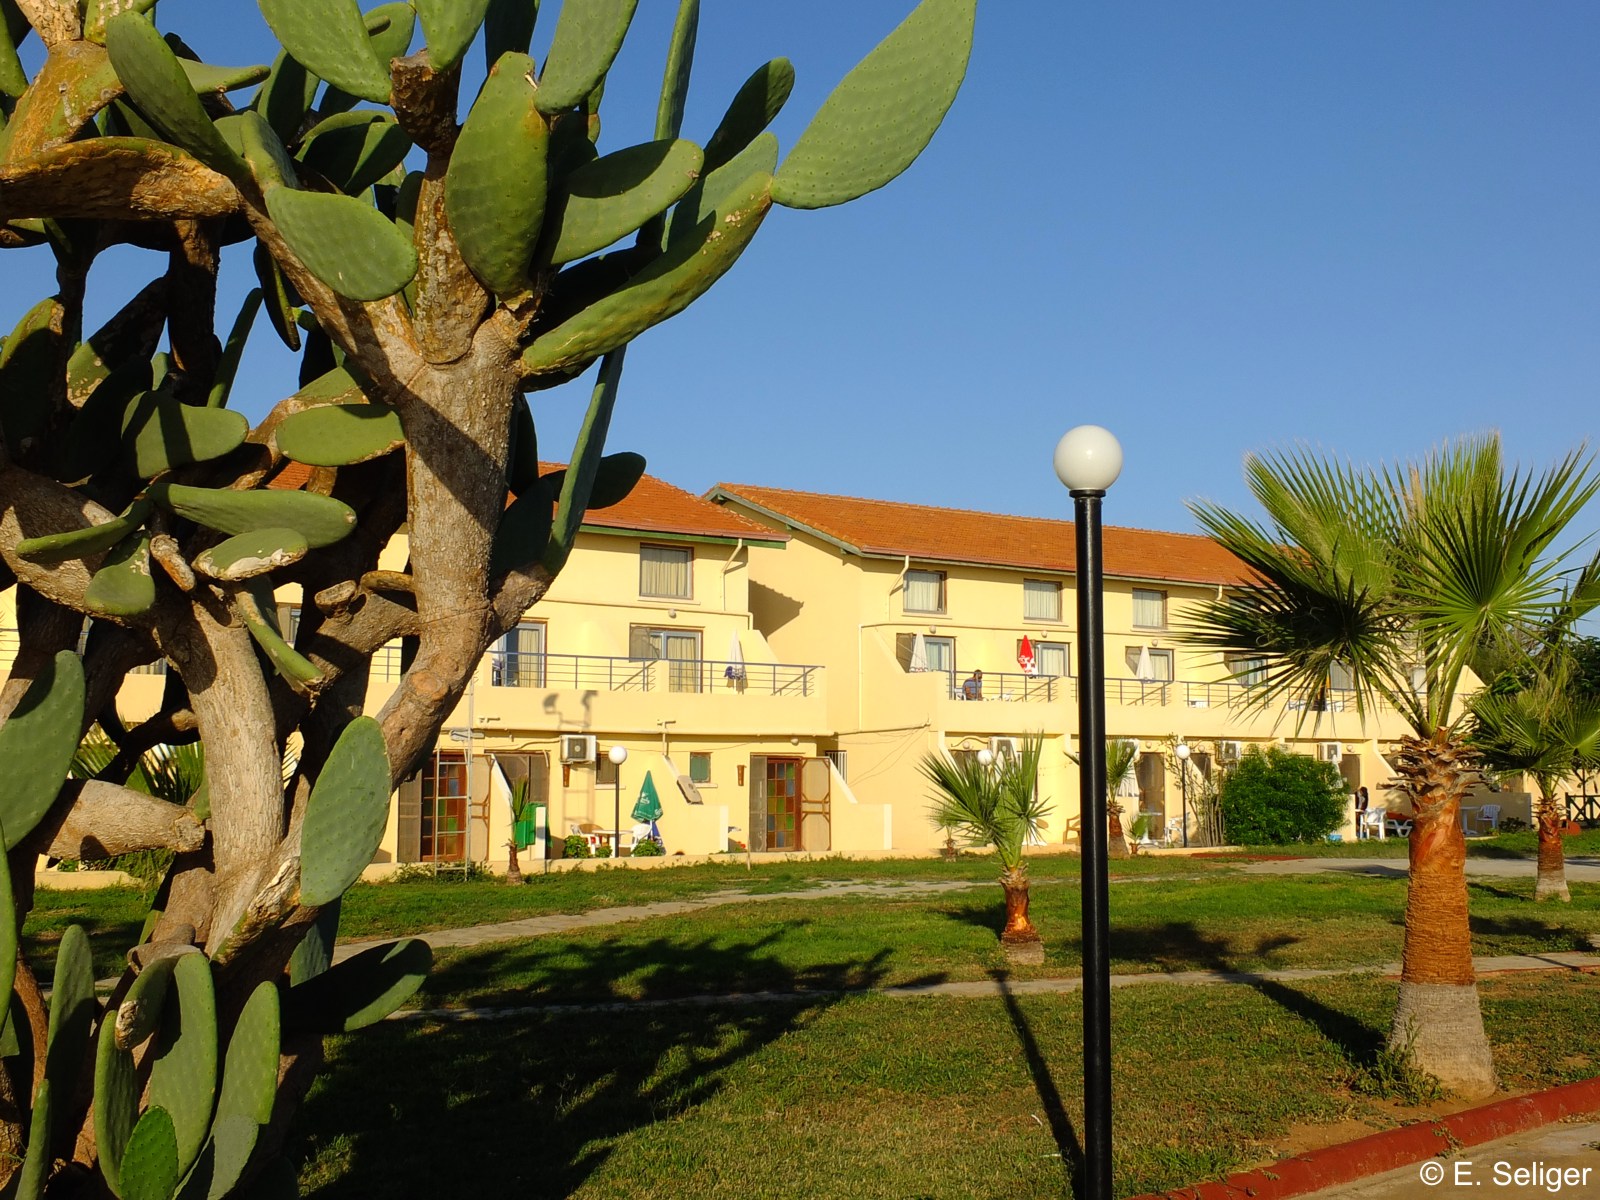 Unterkunftsgebude und Gartenanlage der Kocareis Bungalows - Nordzypern - Lupe Reisen